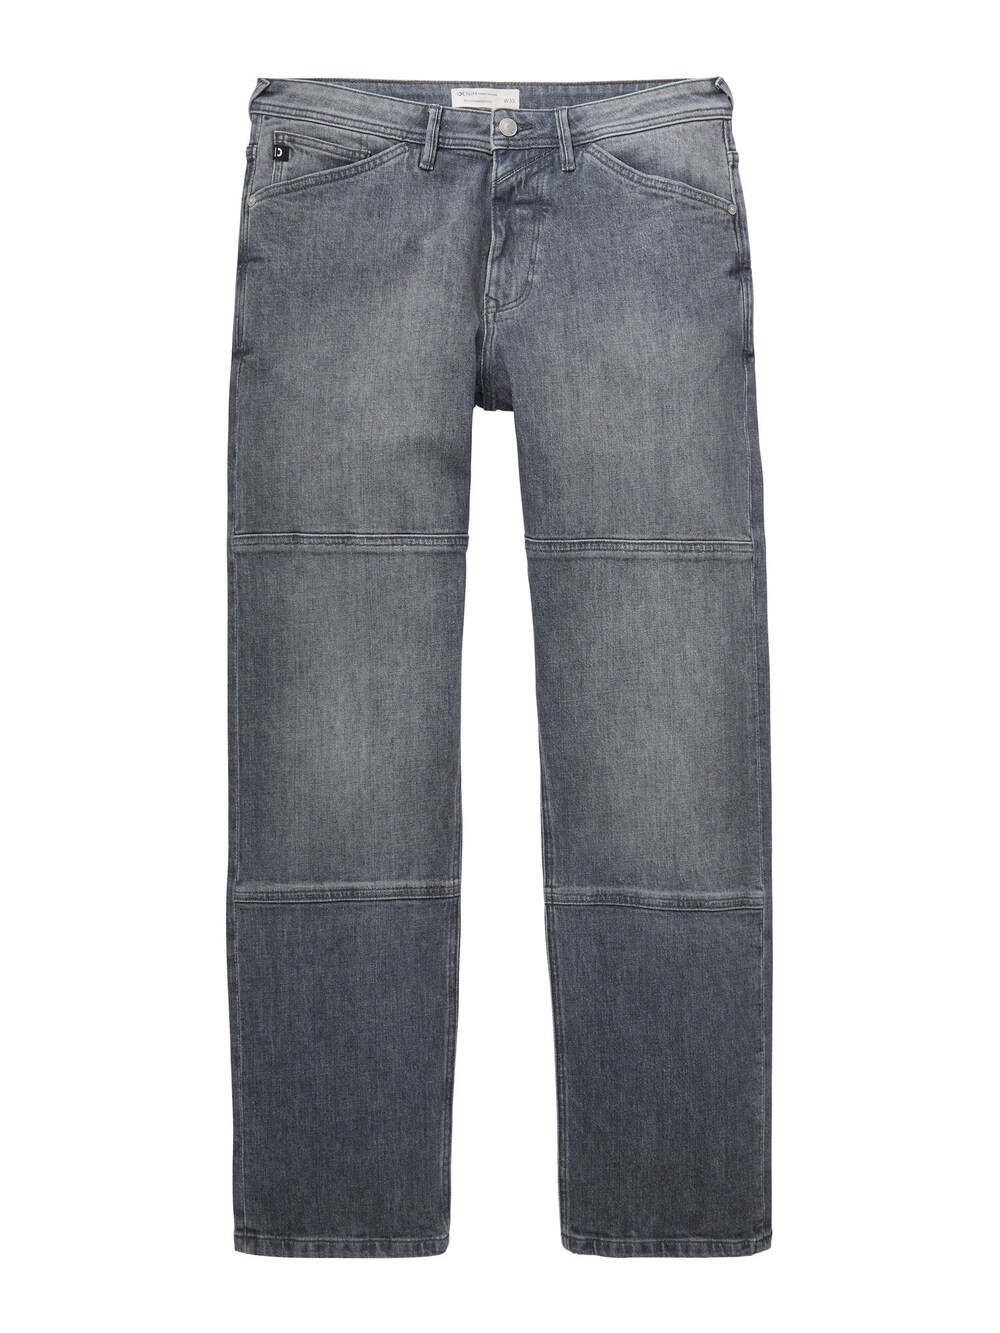 Обычные джинсы TOM TAILOR DENIM, серый обычные брюки чинос tom tailor denim темно серый